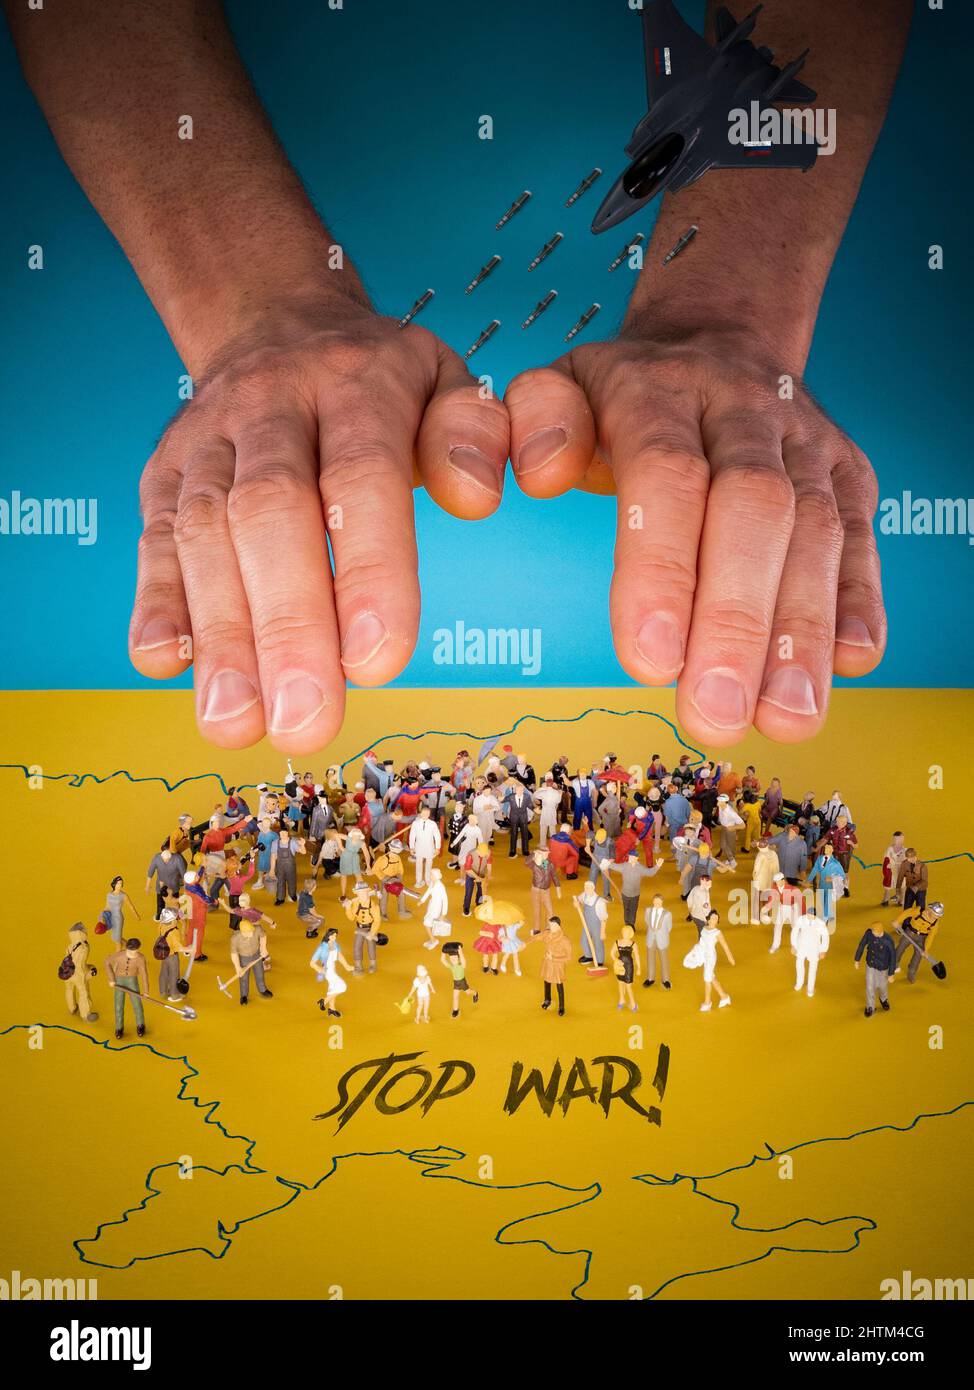 Stop War on the Ukraine. Bandiera Ucraina e concetto di popolo ucraino. Pregate per la pace in Ucraina. Salva l'Ucraina dalla Russia e dall'attacco russo. Protezione Foto Stock